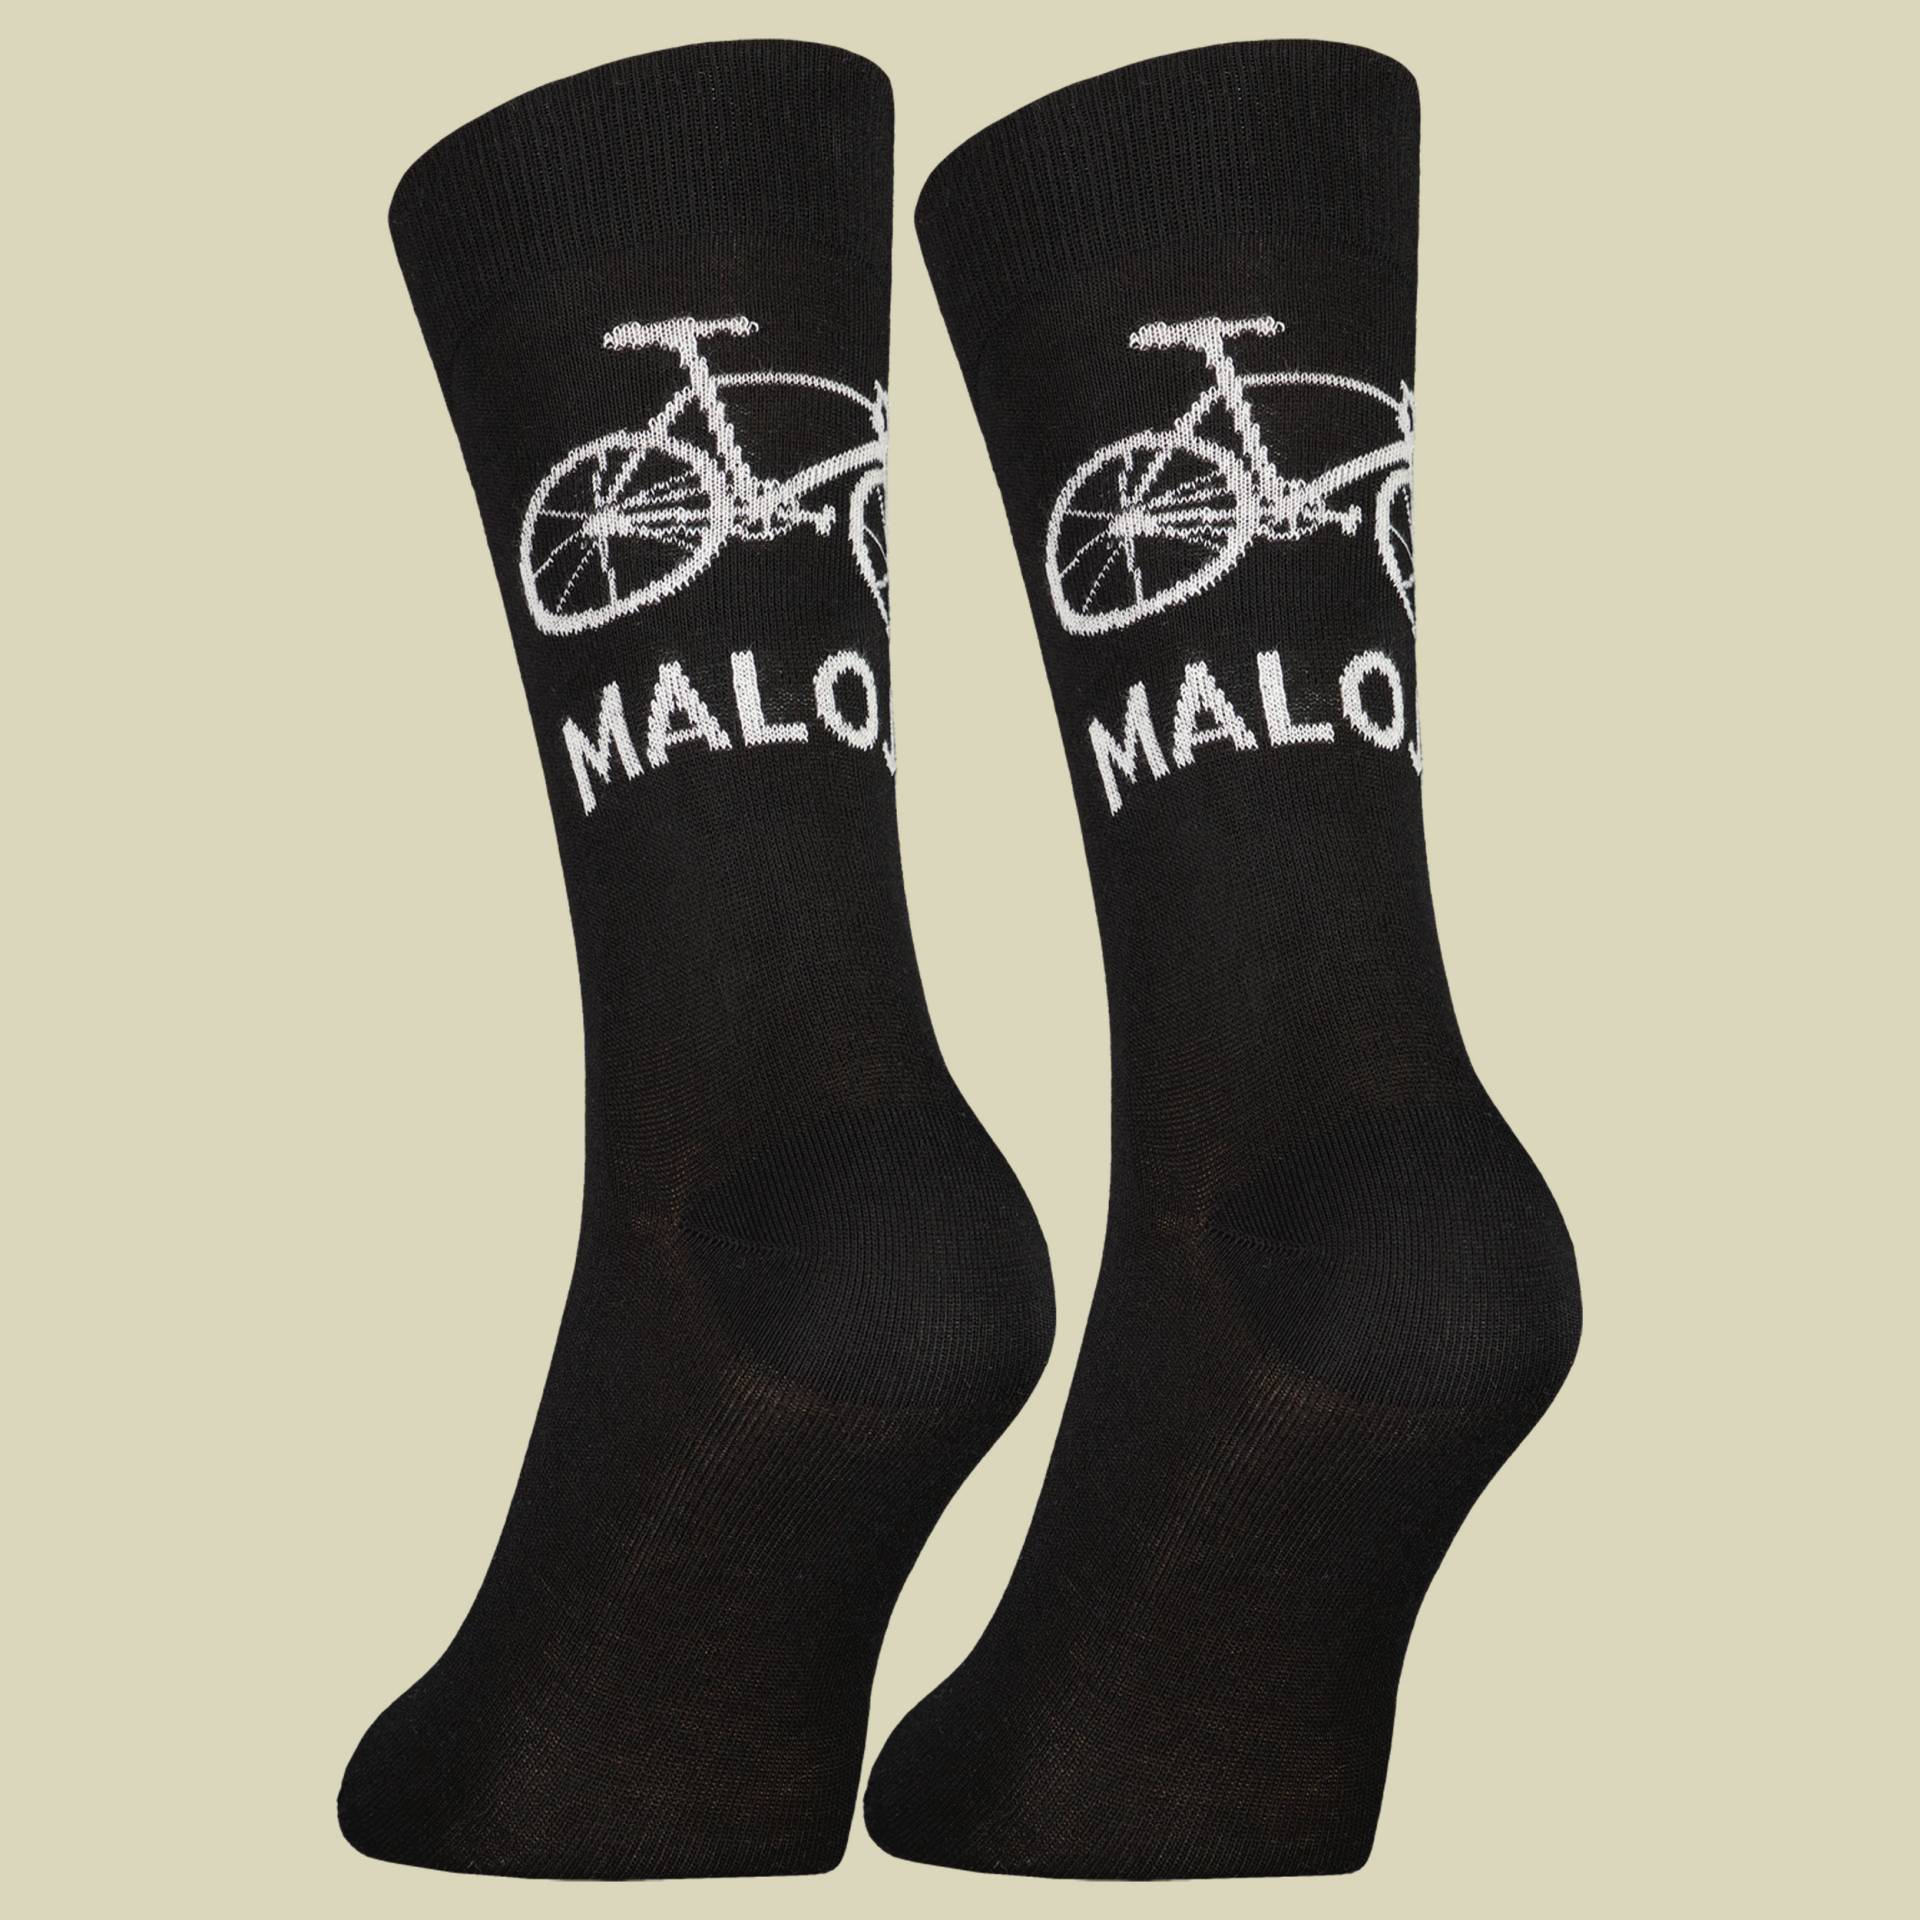 StalkM. Socks Men Größe 39-42 Farbe deep black von Maloja